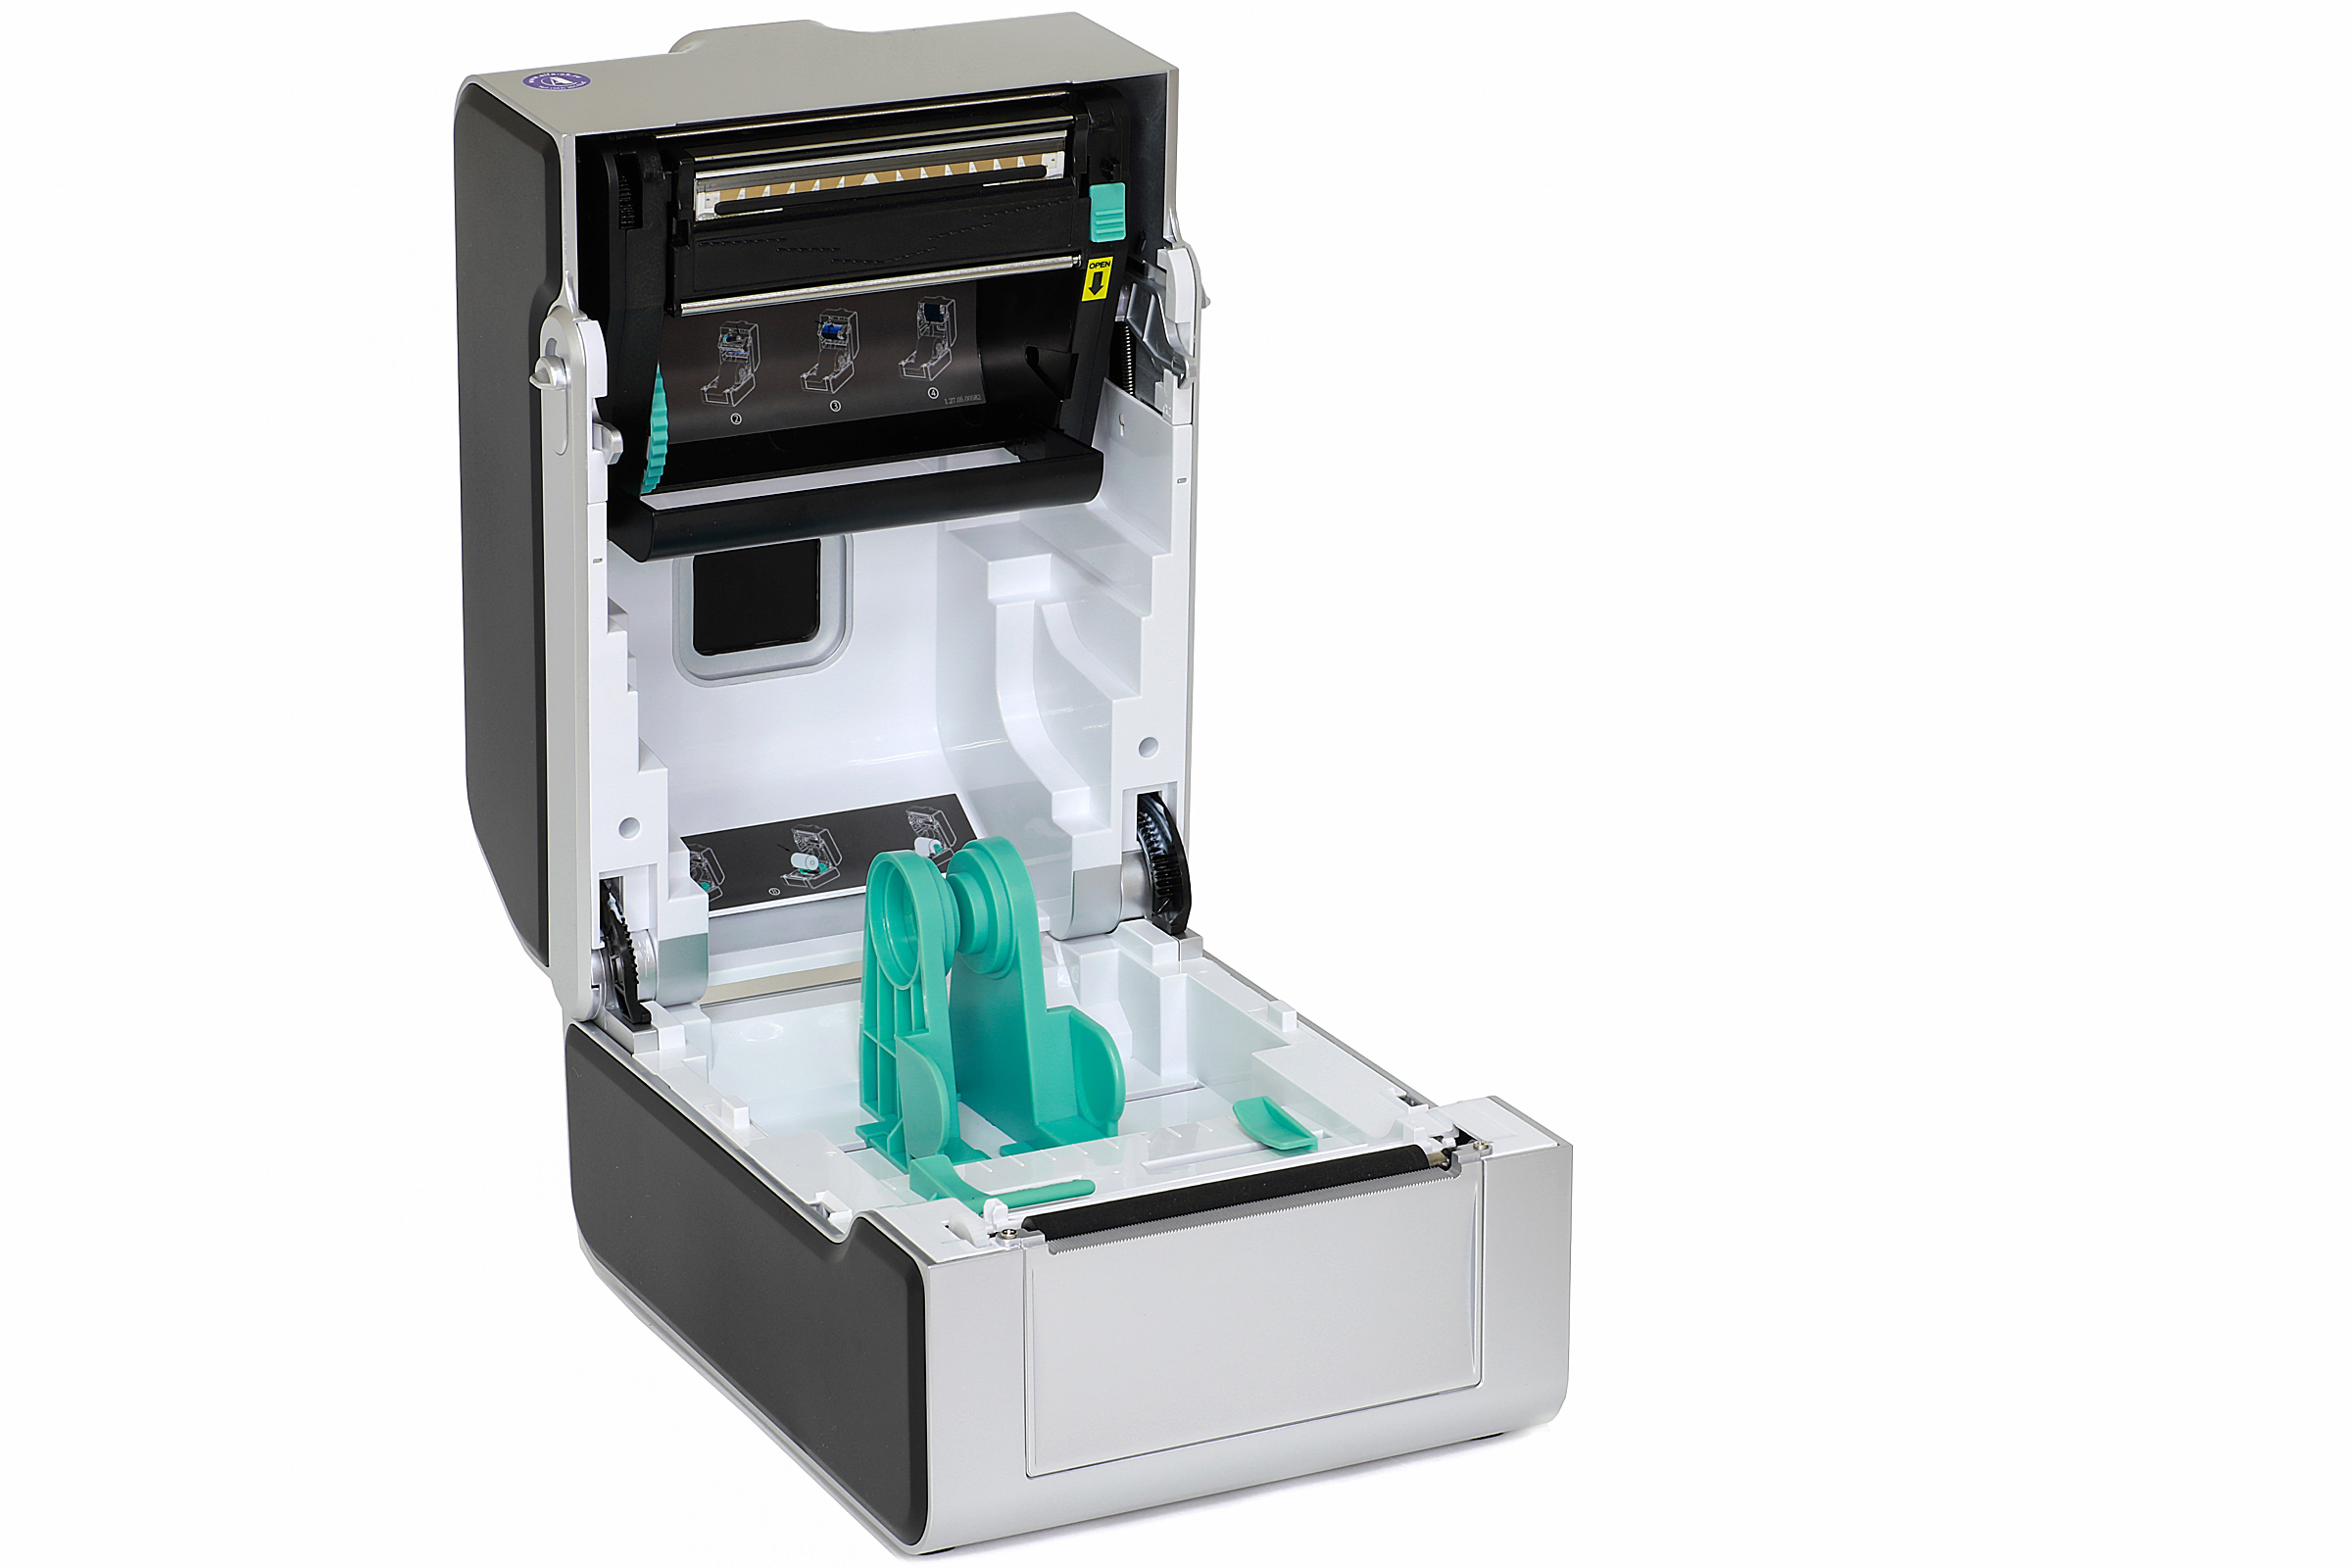 Принтер этикеток Gprinter GS-2406T PLUS - 